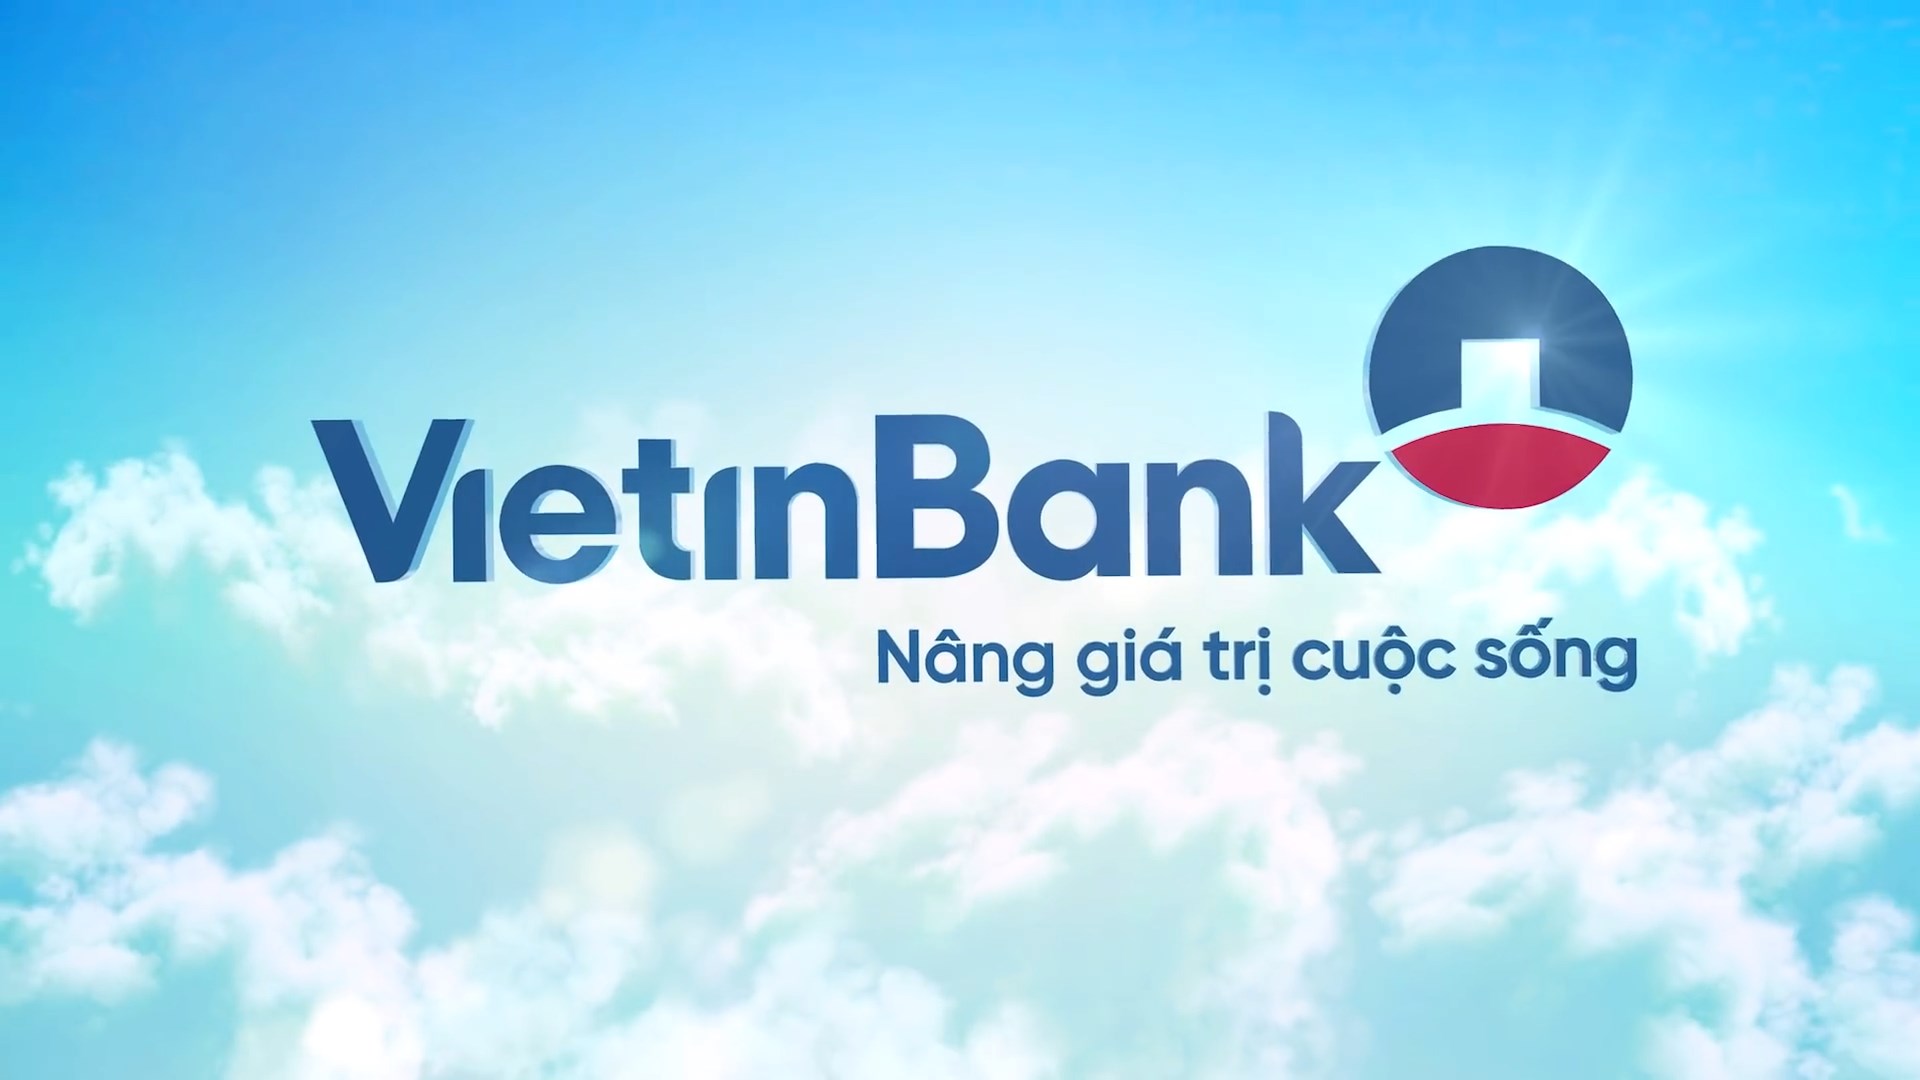 Vietinbank là địa chỉ vay vốn ngân hàng Hải Phòng được nhiều khách hàng lựa chọn và tin tưởng